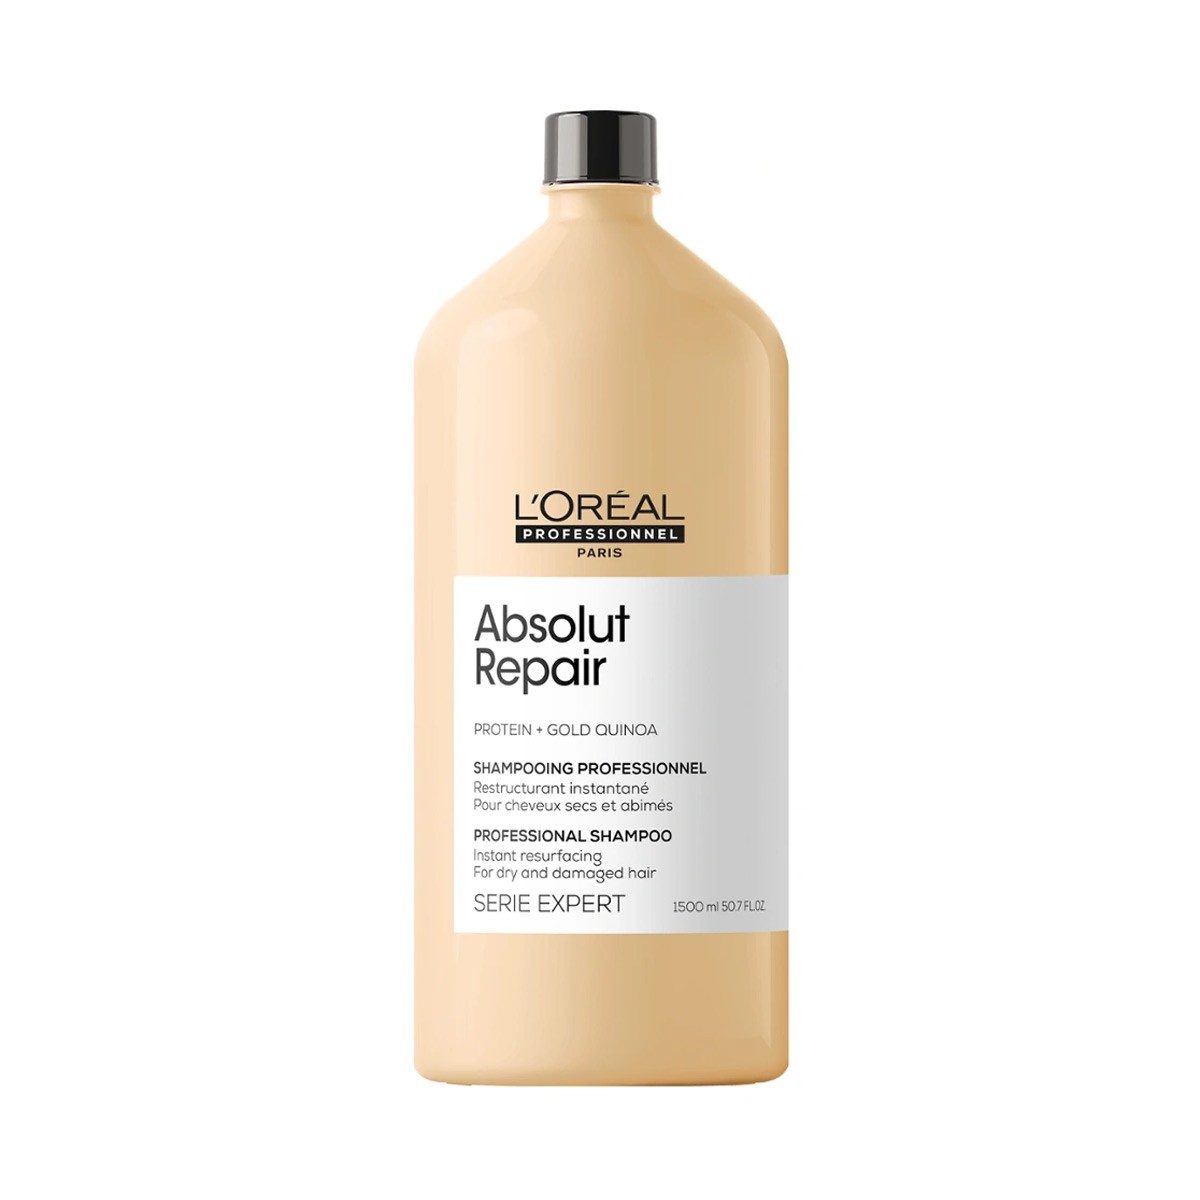 loreal professionnel vitamino color a-ox szampon 500ml allegro